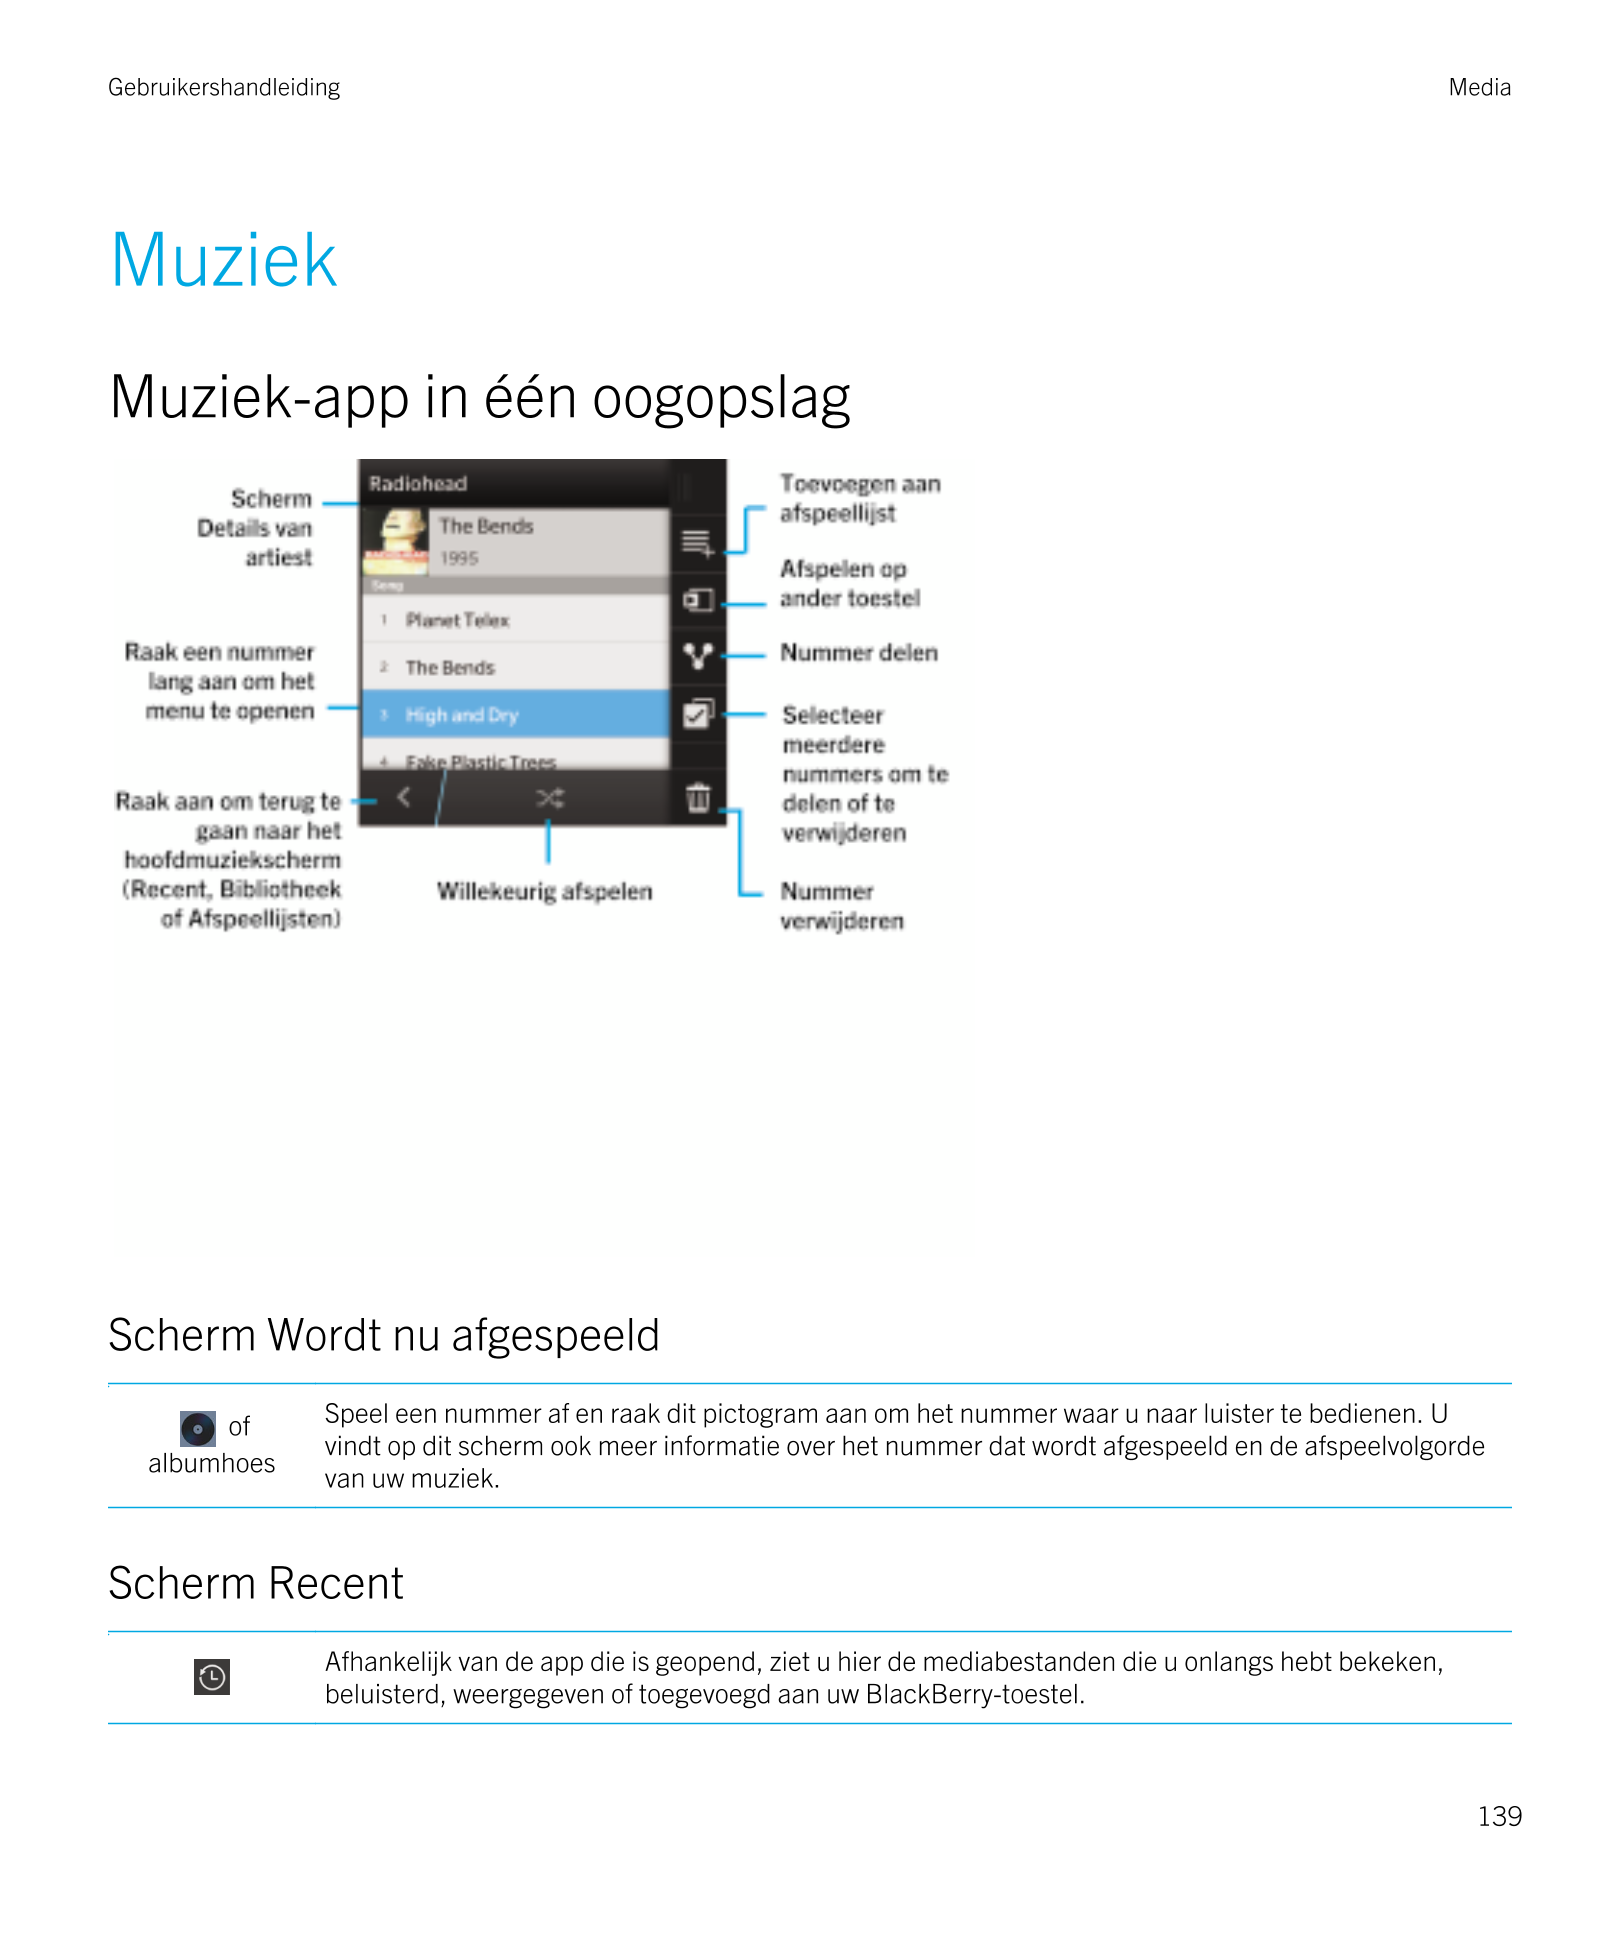 Gebruikershandleiding Media
Muziek
Muziek-app in één oogopslag
Scherm Wordt nu afgespeeld
 of  Speel een nummer af en raak dit p